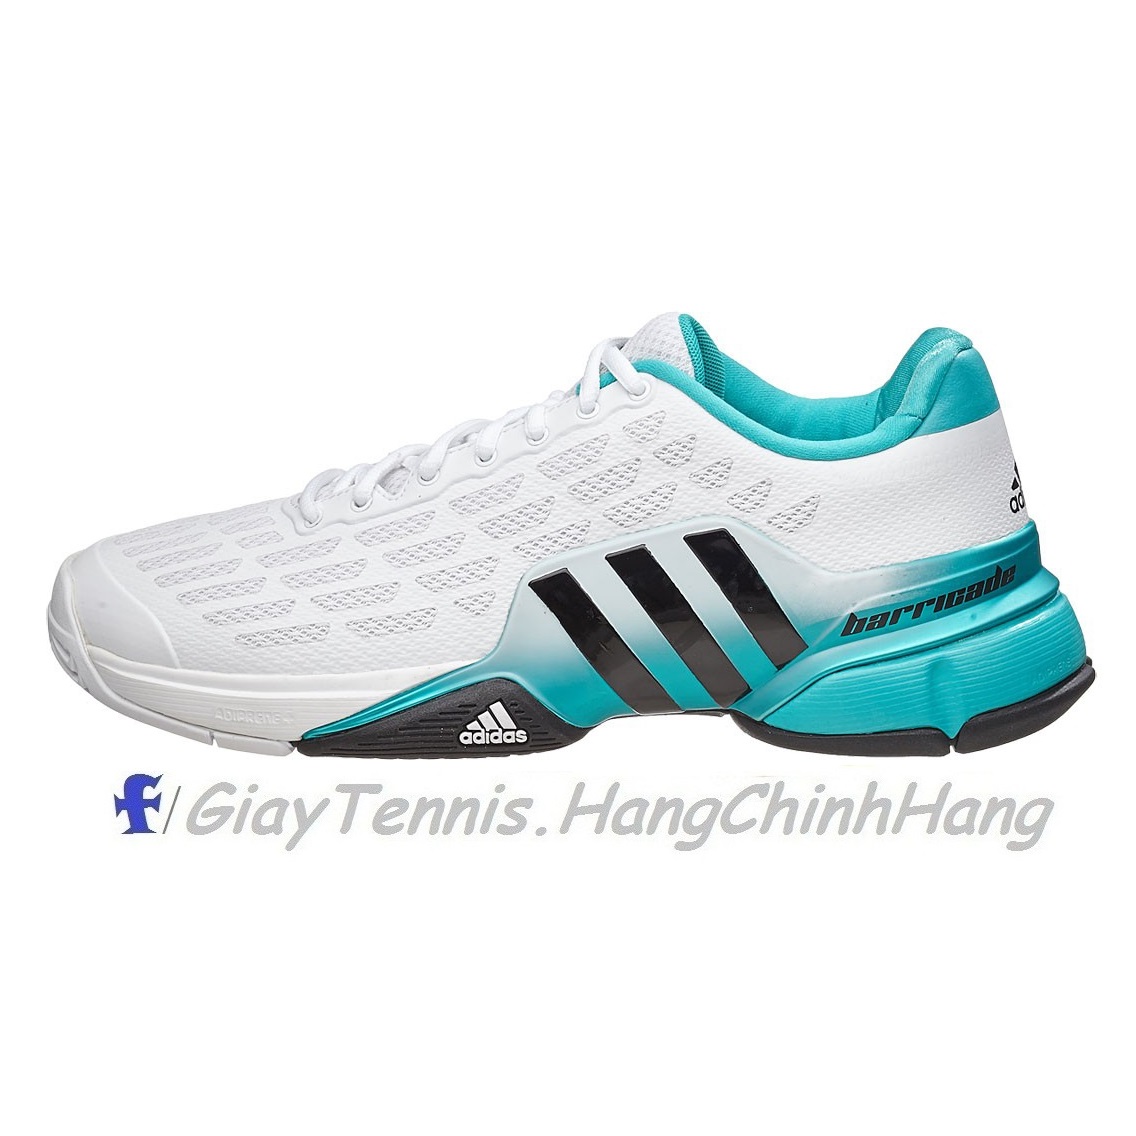 Giày Tennis Adidas Barricade 2016 White/Green Chính Hãng SALE OFF 30% | Trang Nguyên Sport